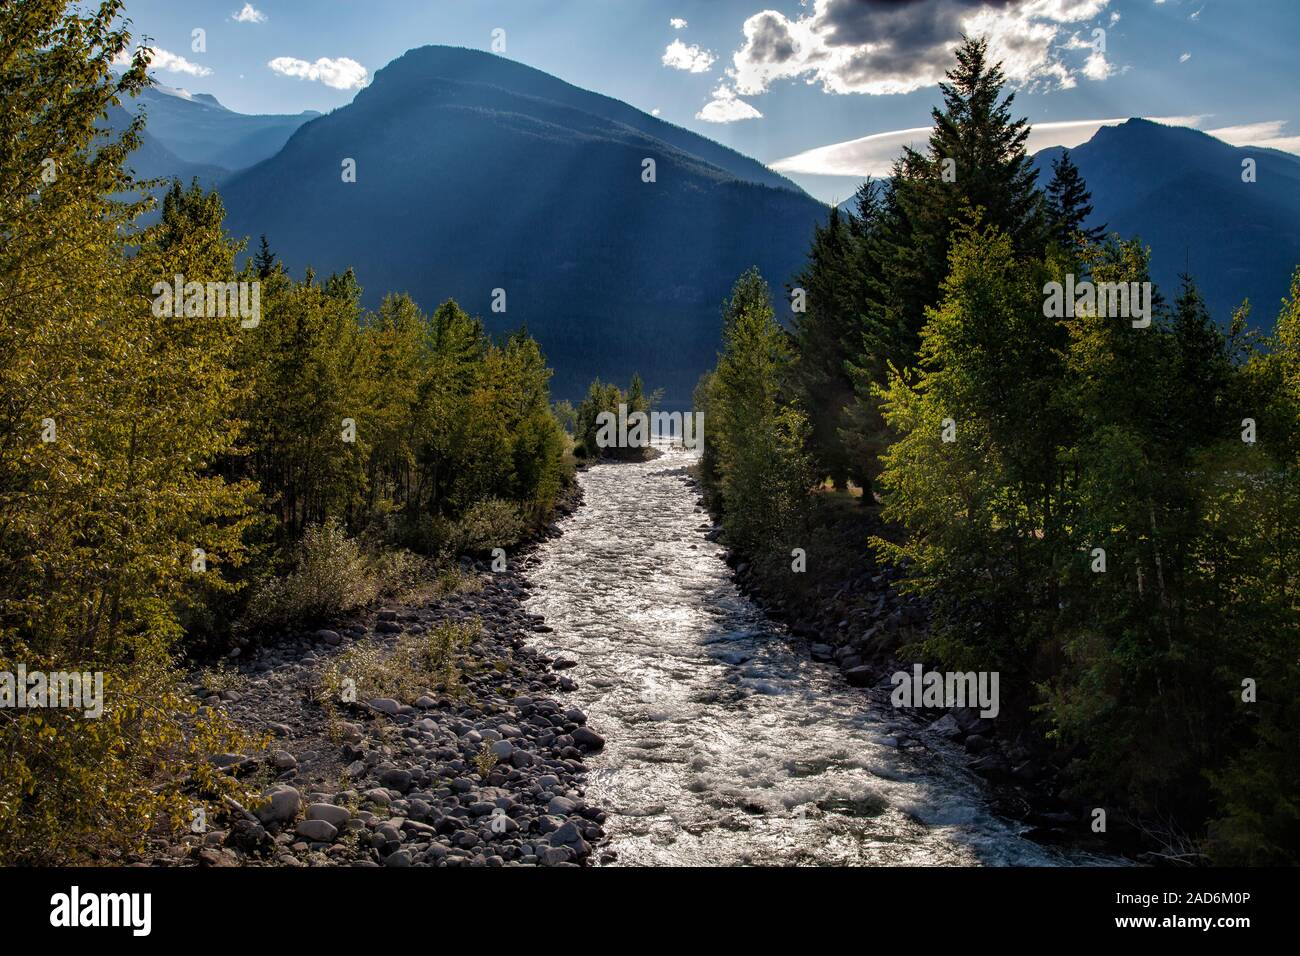 Carpenter Creek qui se jette dans le lac Slocan, New Denver, Slocan Valley, West Kootenay, Colombie-Britannique, Canada Banque D'Images